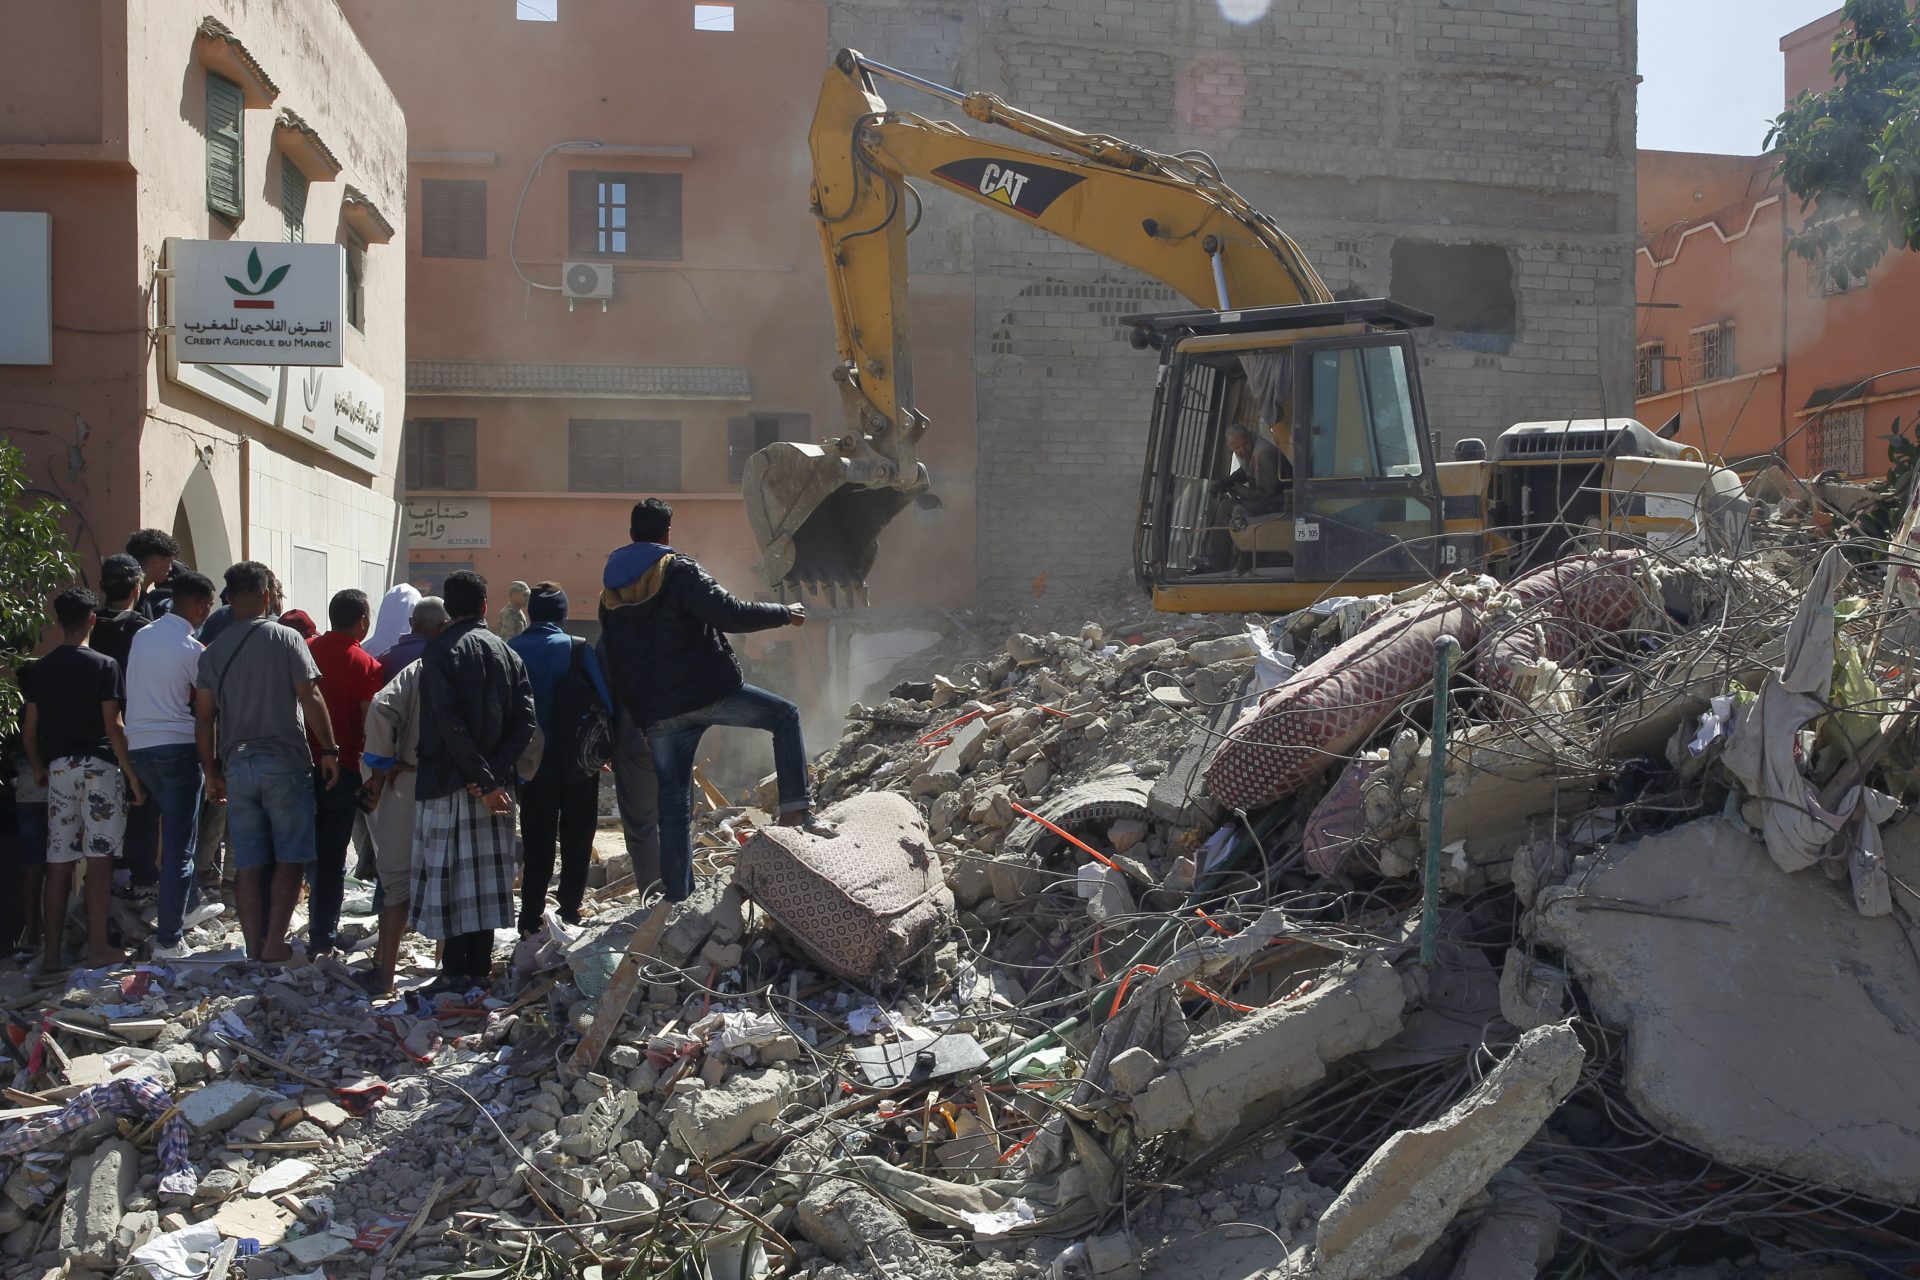 Una máquina excavadora ayuda en las tareas de búsqueda de supervivientes entre los escombros de edificios derruidos en la población de Amizmiz, situada a unos 30 kilómetros del epicentro del terremoto, en las faldas del Atlas. EFE/ María Traspaderne